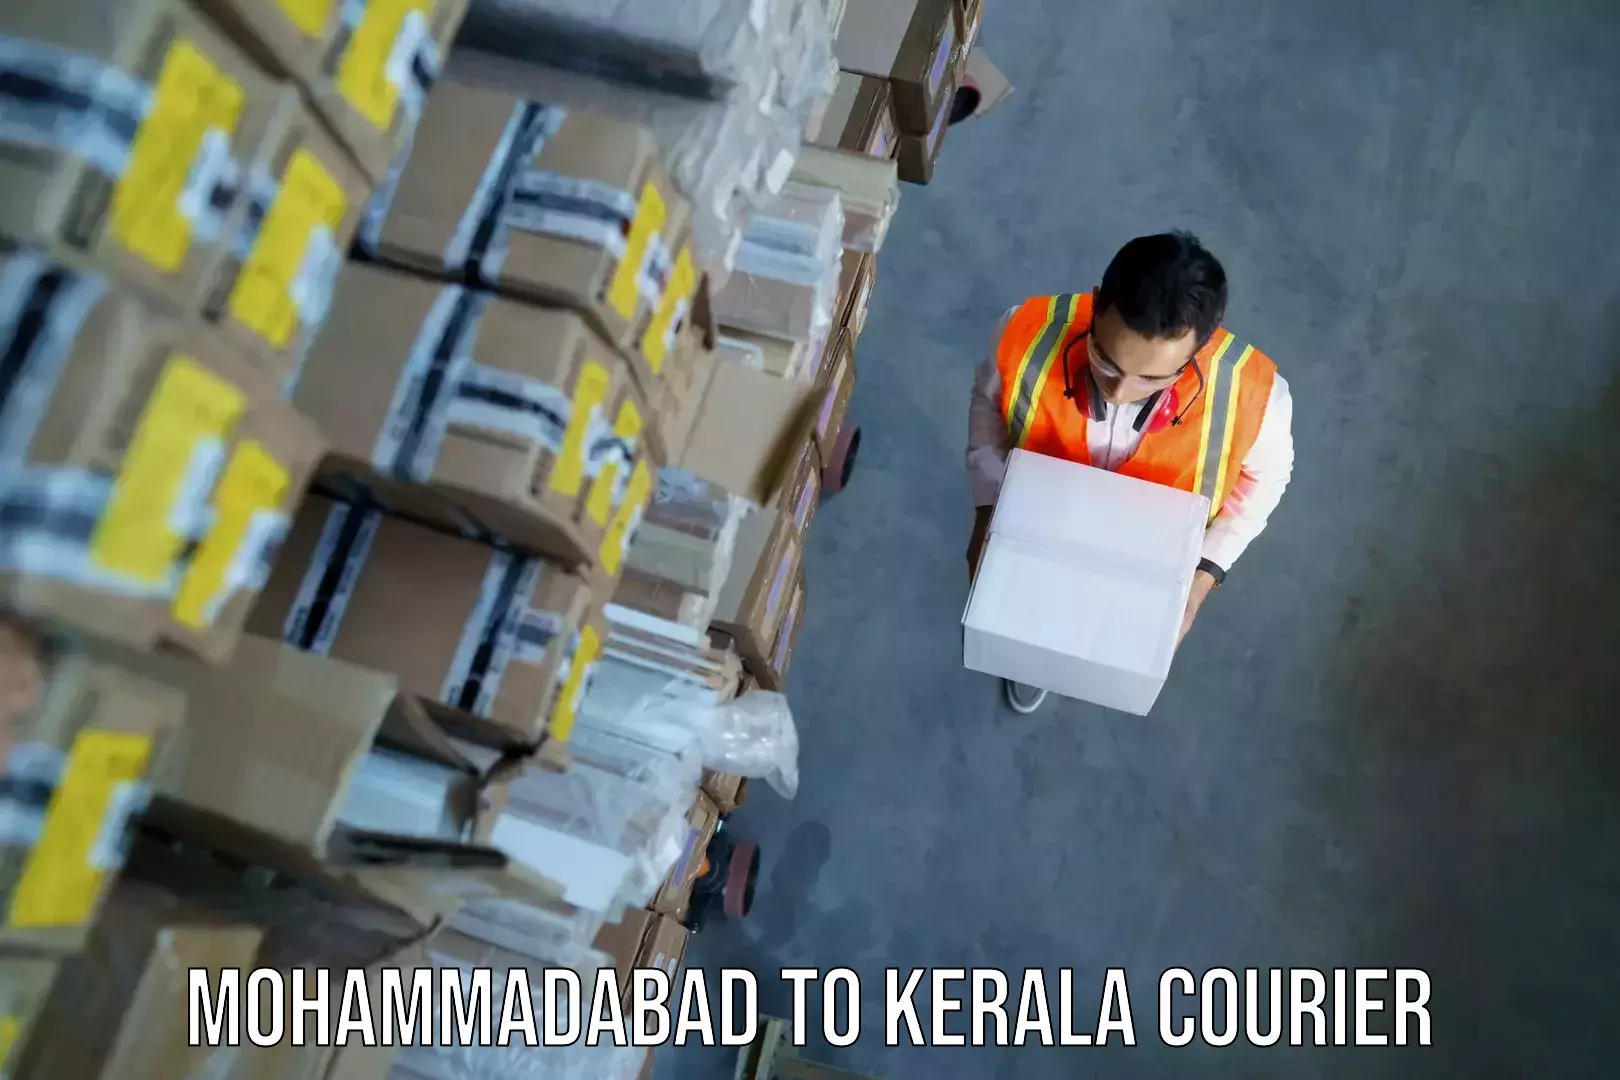 Baggage shipping quotes Mohammadabad to Kerala